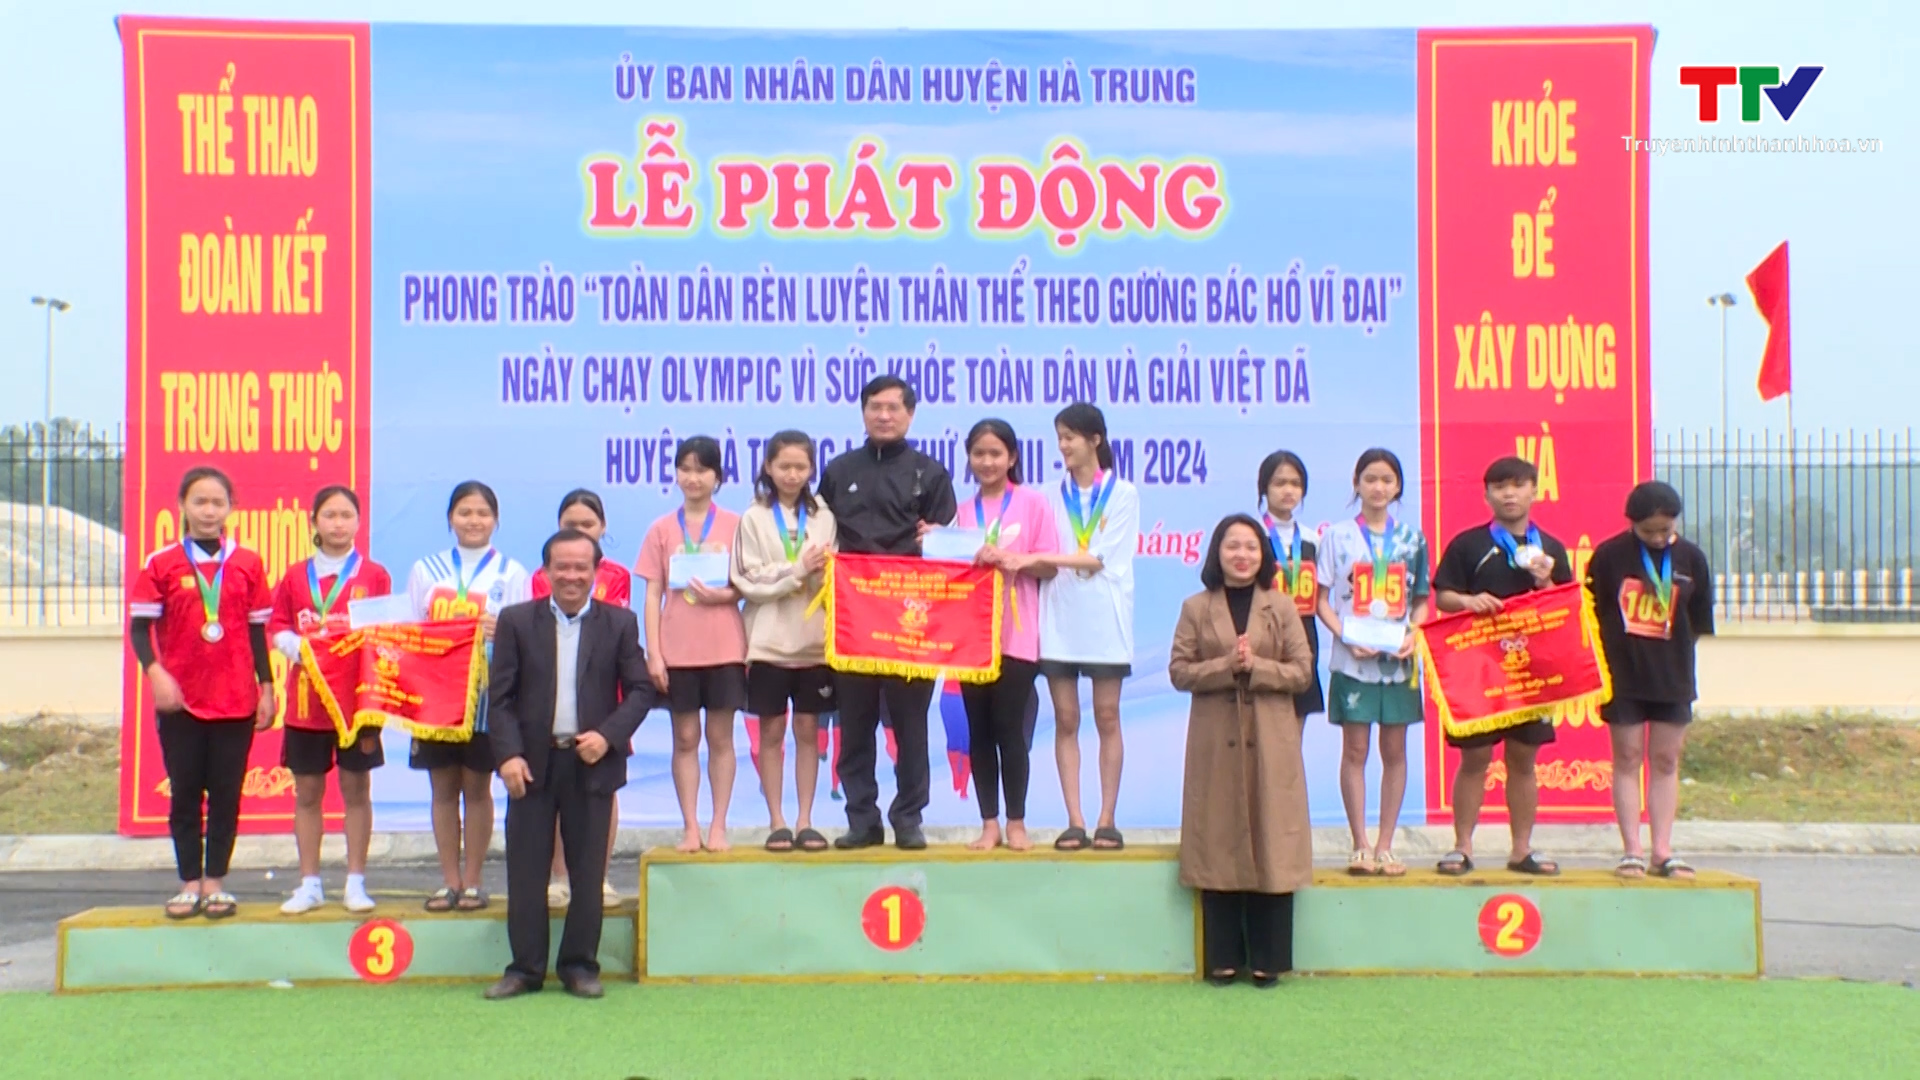 Huyện Hà Trung tổ chức Ngày chạy Olympic “Vì sức khỏe toàn dân” và Giải việt dã năm 2024- Ảnh 2.